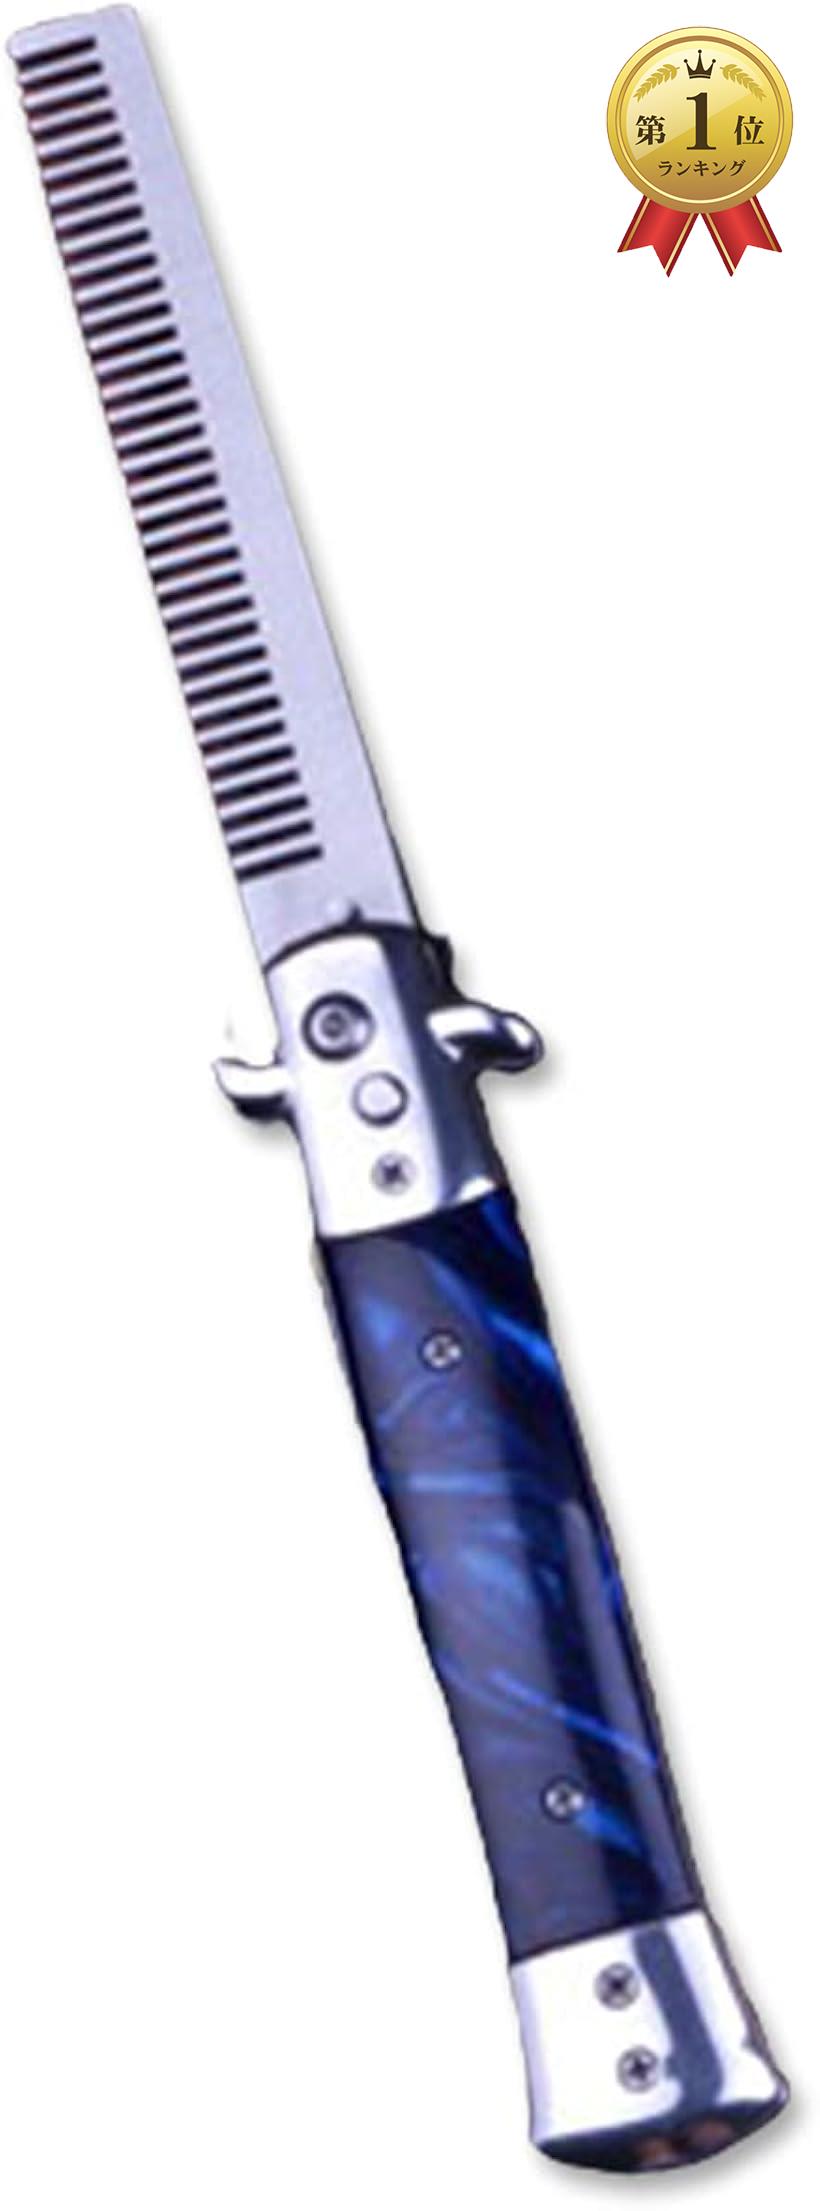 バタフライナイフ型 折りたたみ 携帯用 コーム クシ くし 粗め ステンレス 金属製 シンプル メンズ( ブルー)